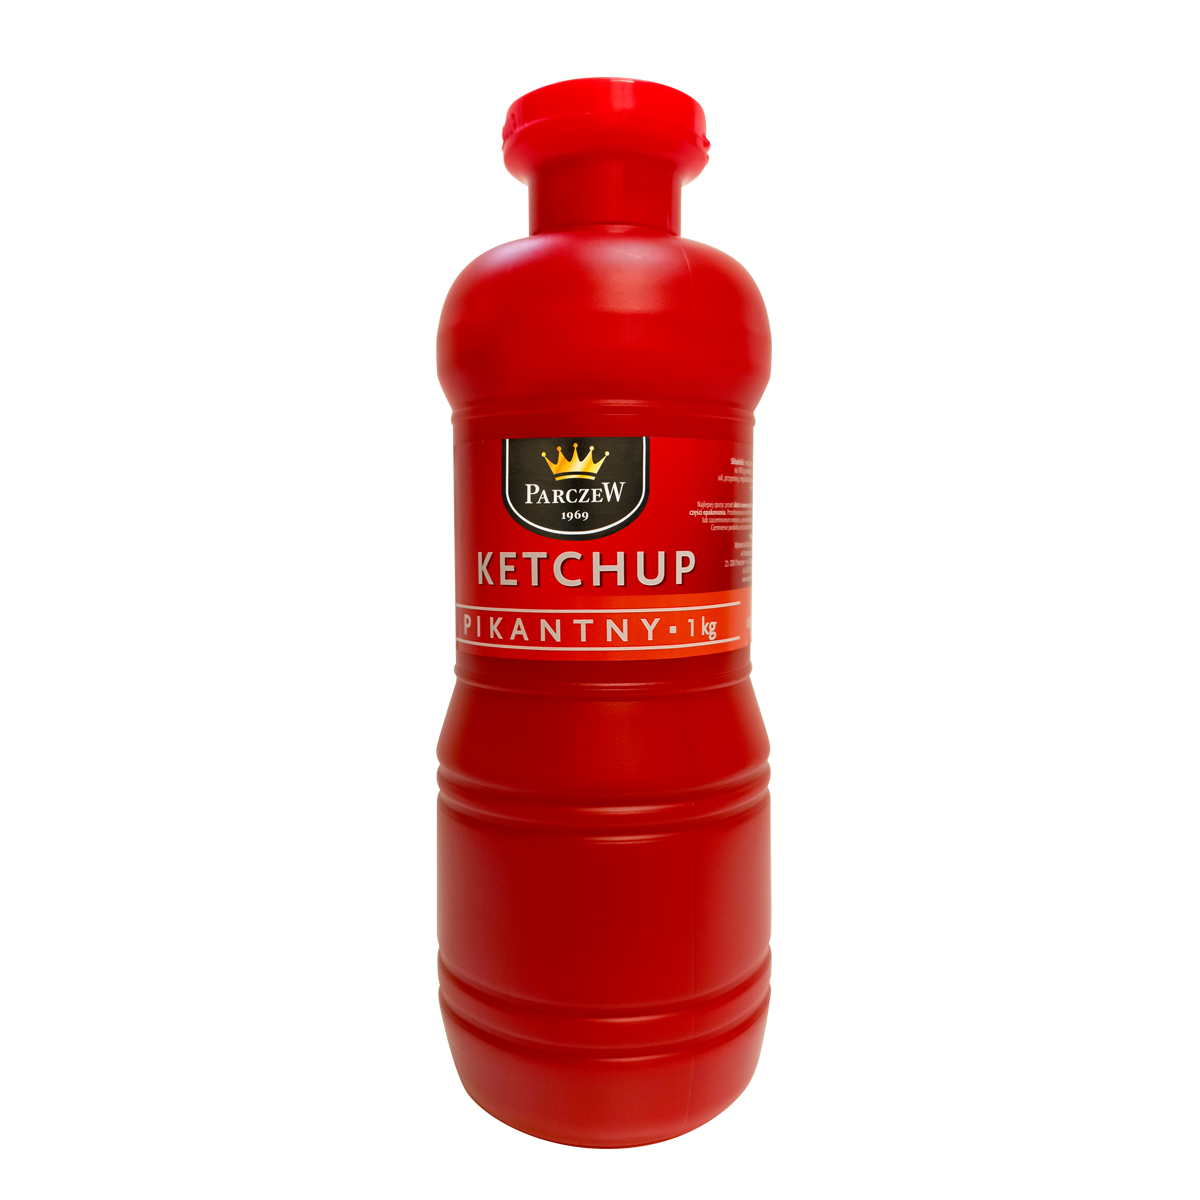 Ketchup_Pikantny_1kg